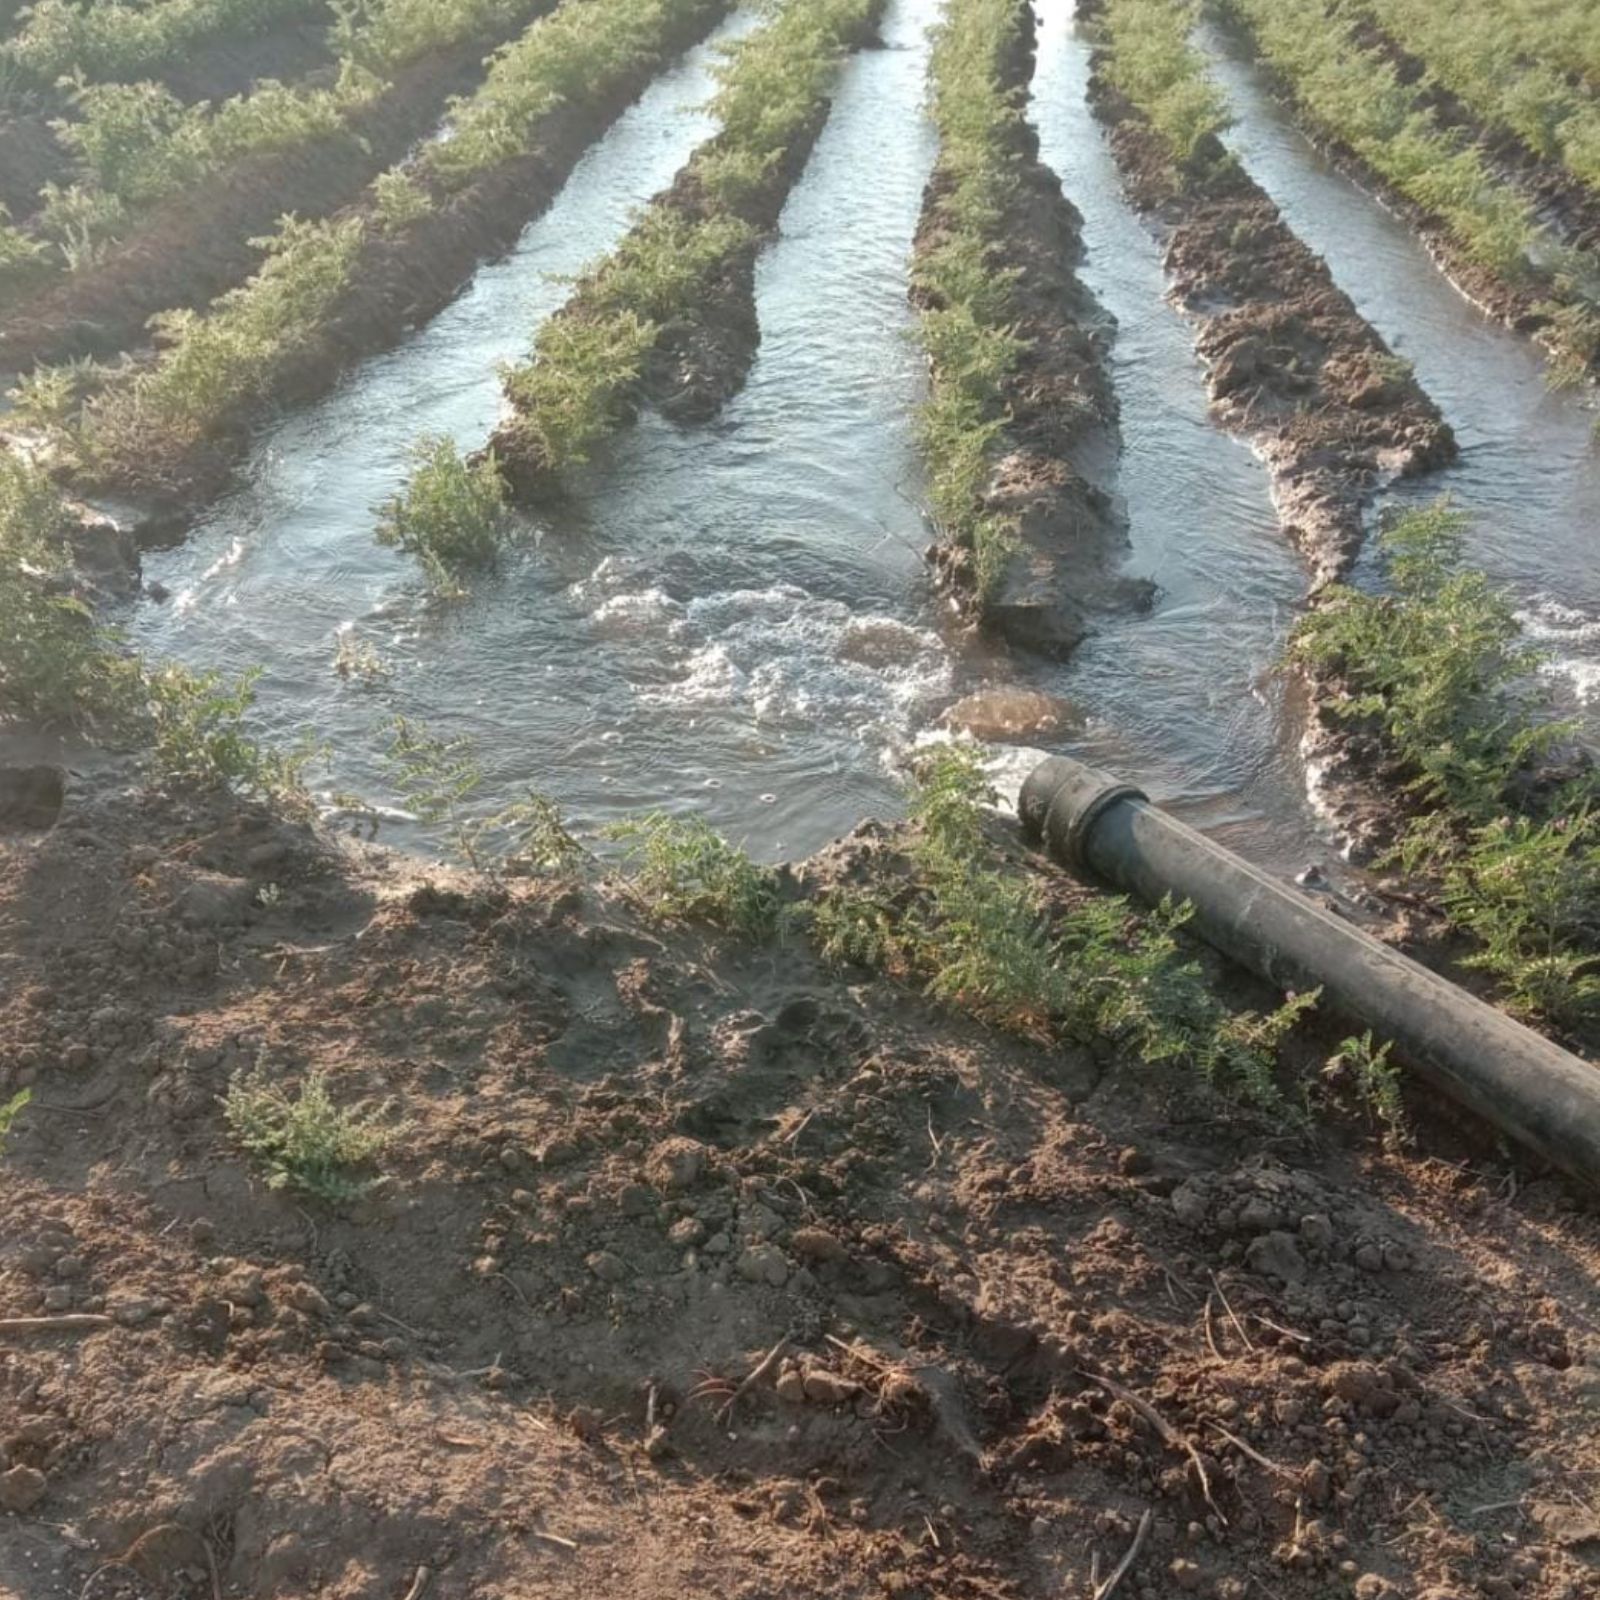  દીપિકા ખુમાણ, અમદાવાદ: વરસાદી પાણી વહી જતો હોય છે, પરંતુ તેનો સંગ્રહ કરવામાં આવે તો કેટલો ઉપયોગી સાબિત થાય તેનું ઉદાહરણ એક ખેડૂતે આપ્યું છે. આ ખેડૂત પોતાના જ ખેતરમાં 55 ફૂટ પાઇપ જમીનમાં ઉતારી વરસાદી પાણીનો સંગ્રહ કરે છે. આ સંગ્રહિત પાણી આખા વર્ષ દરમિયાન ખેતીમાં ઉપયોગી બને છે. આ વર્ષે જ તેમણે 90 મણ ચણાનો પાક આ પદ્ધતિનો ઉપયોગ કરીને લીધો છે. માંડલ તાલુકાના શેર ગામના ખેડૂત ભાઈલાલભાઈ ઉકાભાઇ પટેલે પોતાની કોઠાસૂઝથી પાણી જમીનમાં ઉતારવા માટેની એક પદ્ધતિ પોતાના ખેતરમાં અપનાવી છે. આ પદ્ધતિથી તેઓ હજારો લિટર પાણીનો સંગ્રહ કરે છે અને એ જ પાણીનો ઉપયોગ આખા વર્ષ દરમ્યાન ખેતીમાં તેમજ વાવણીમાં કરે છે.  આ પદ્ધતિના ઉપયોગ થઈ 2016થી અત્યાર સુધીમાં ચણા, એરન્ડા, કપાસ જેવા અનેક પાકો પોતાના ખેતરમાં વાવ્યા છે.